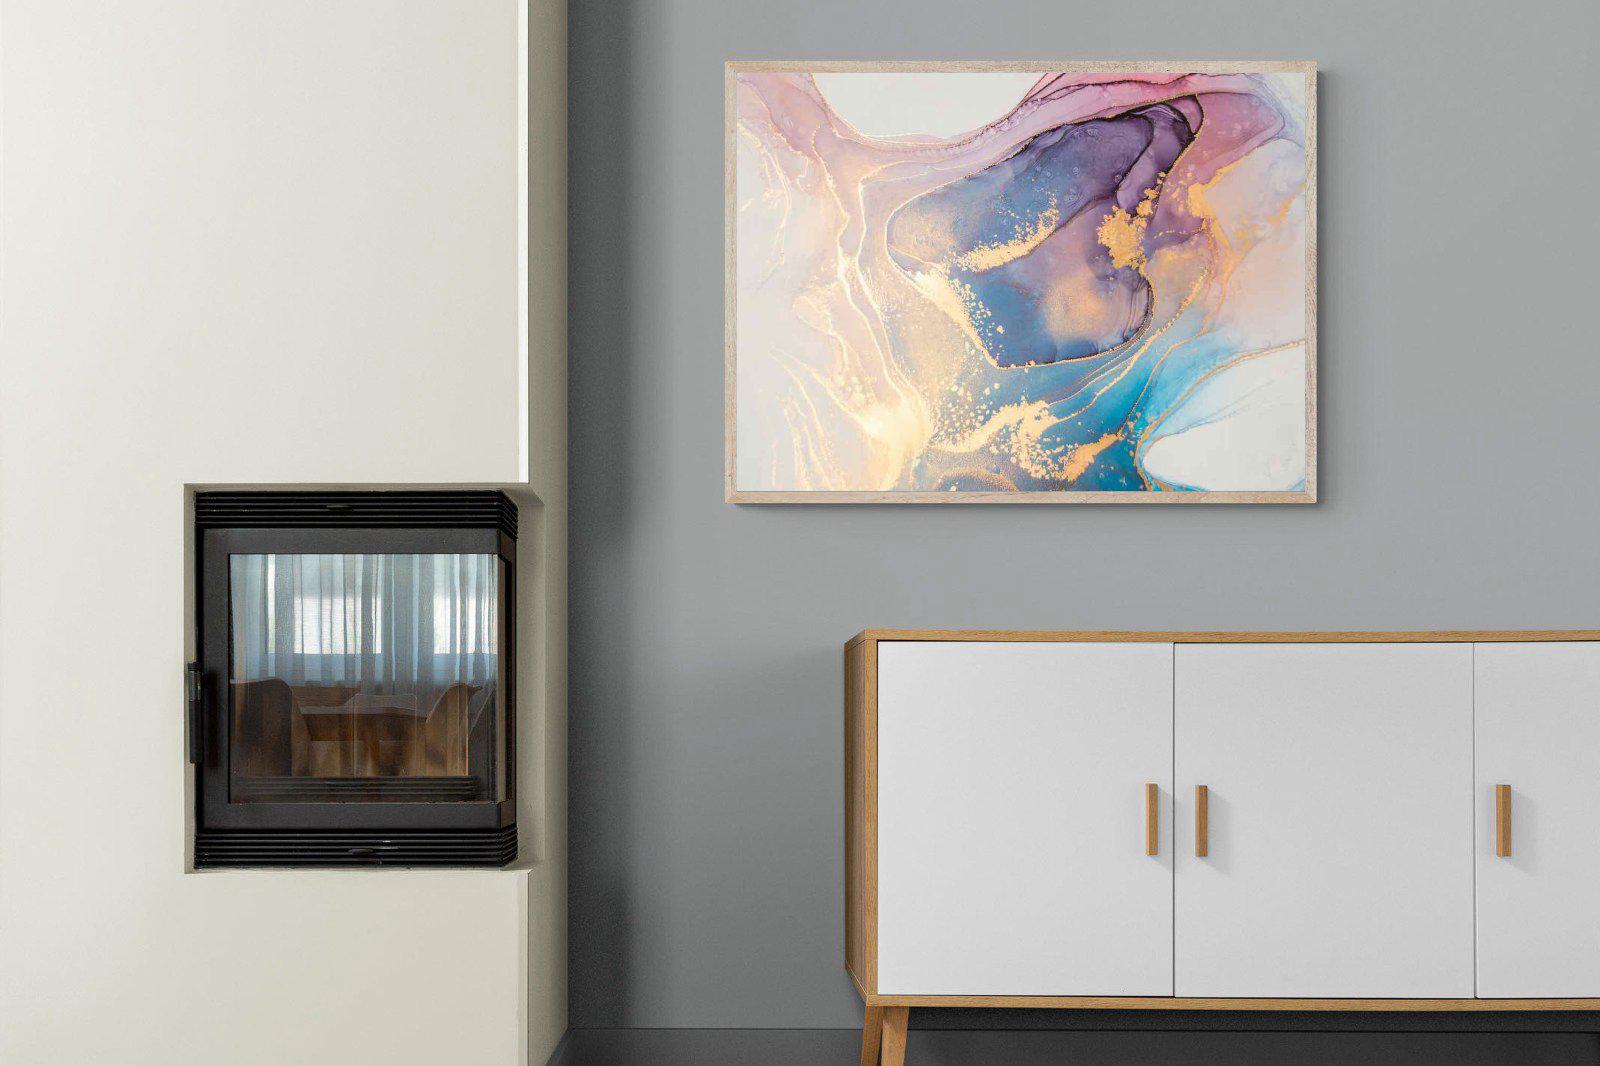 Blushing-Wall_Art-100 x 75cm-Mounted Canvas-Wood-Pixalot